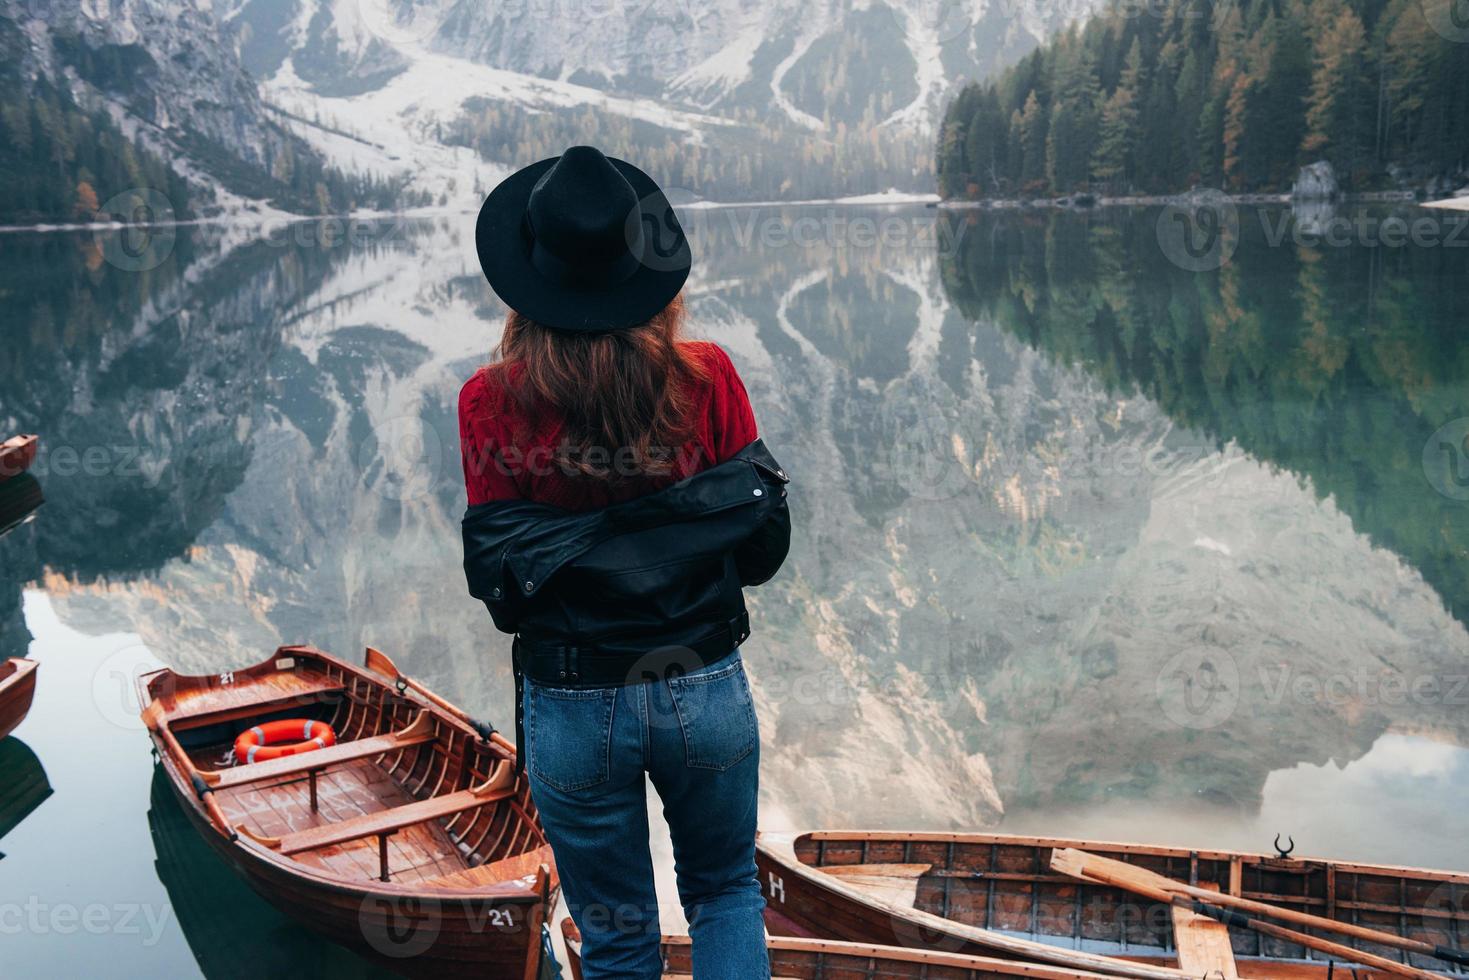 underbar del av naturen. kvinna i svart hatt njuter av majestätiska bergslandskap nära sjön med båtar foto